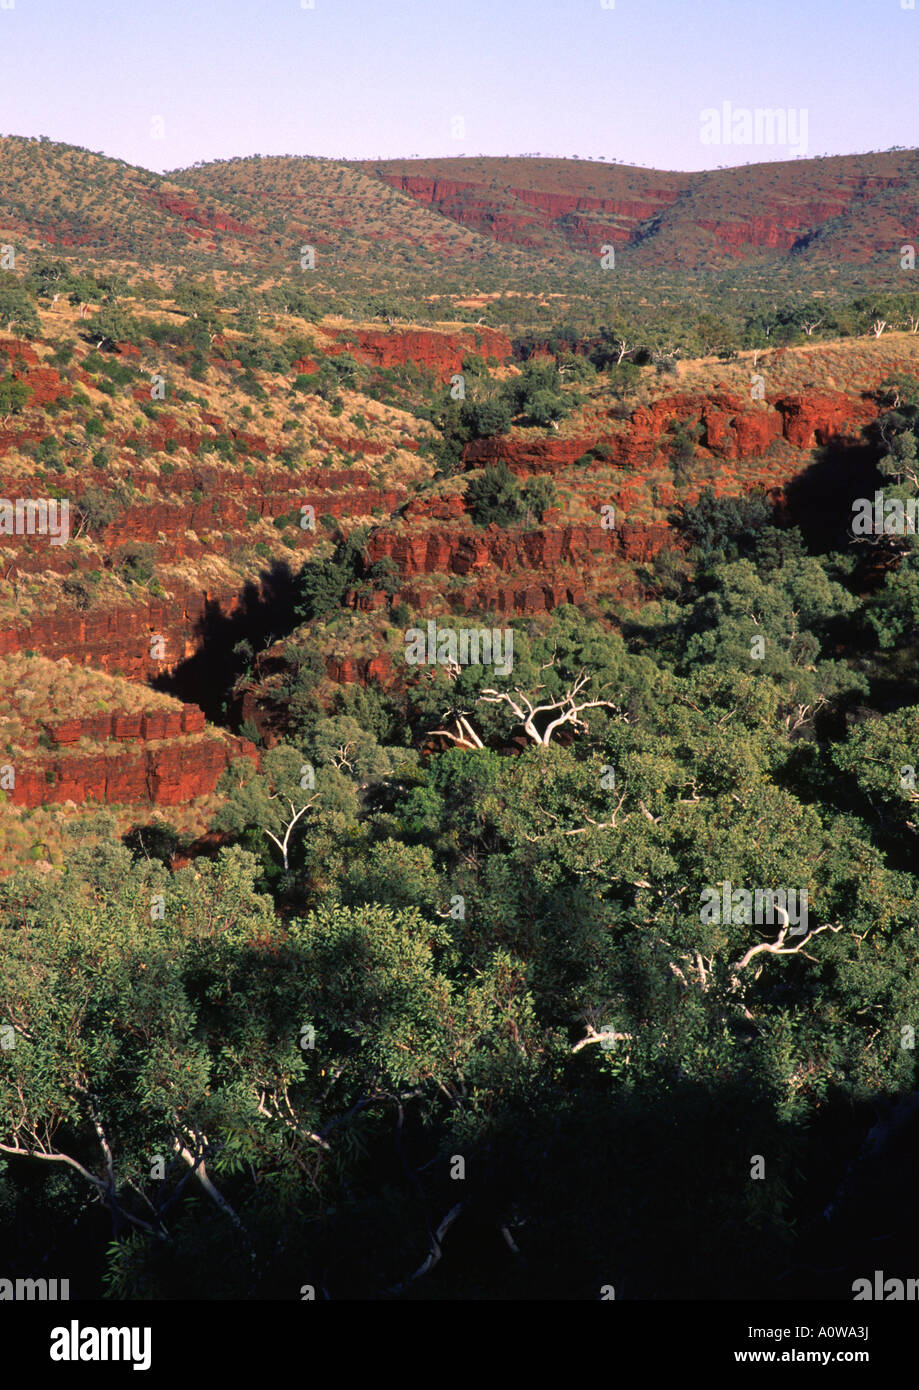 Dales Gorge, parc national de Karijini, Australie Banque D'Images